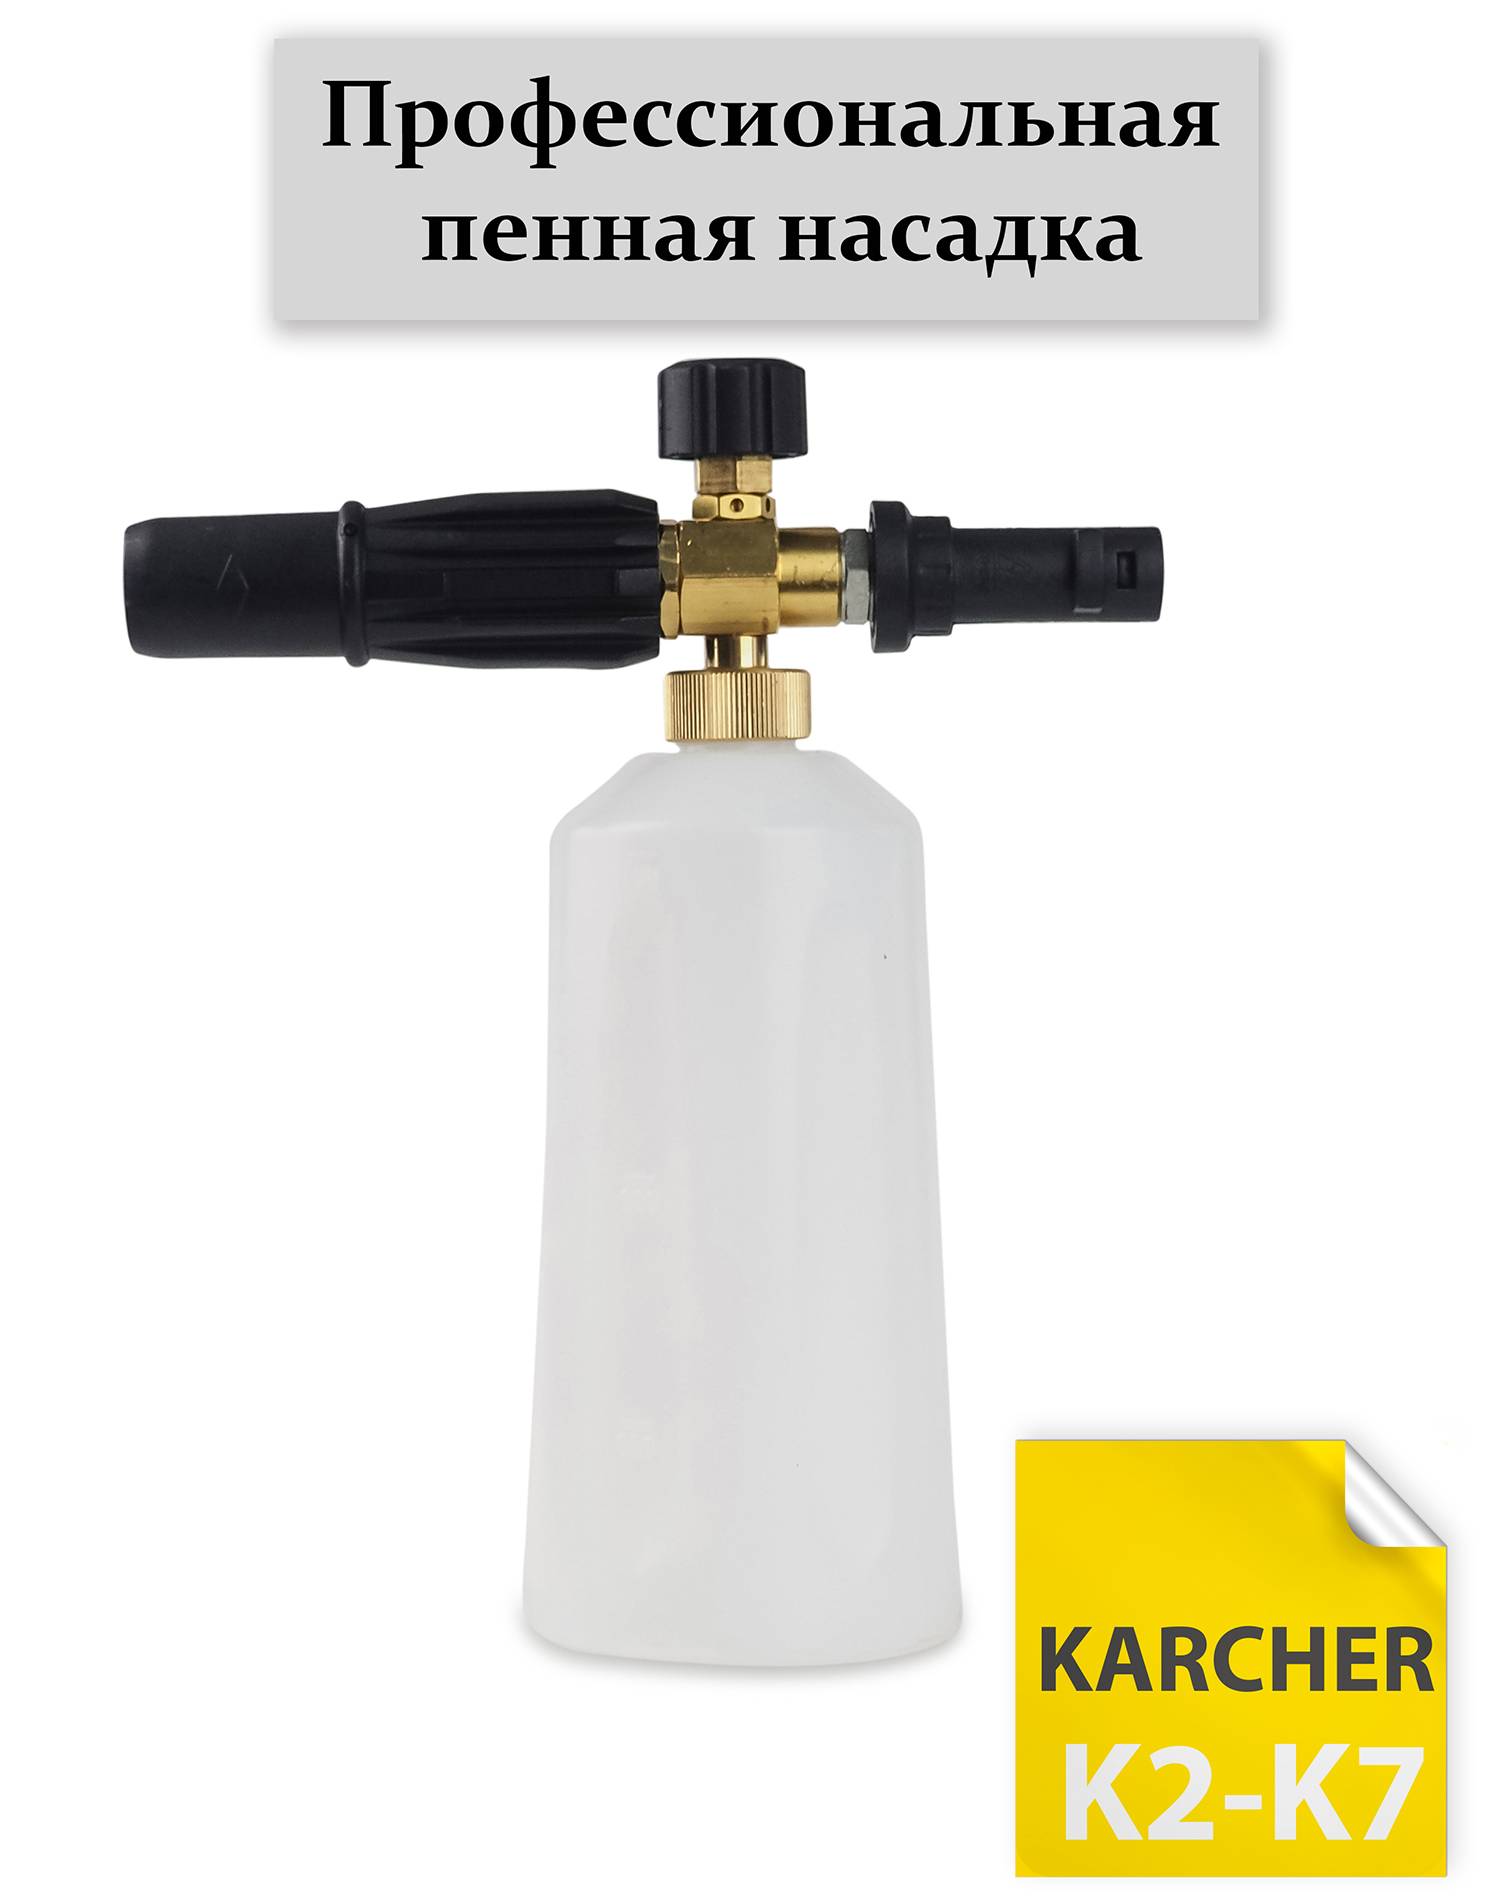 Пенная насадка Karcher TR Advanced 1, купить по низкой цене в Москве